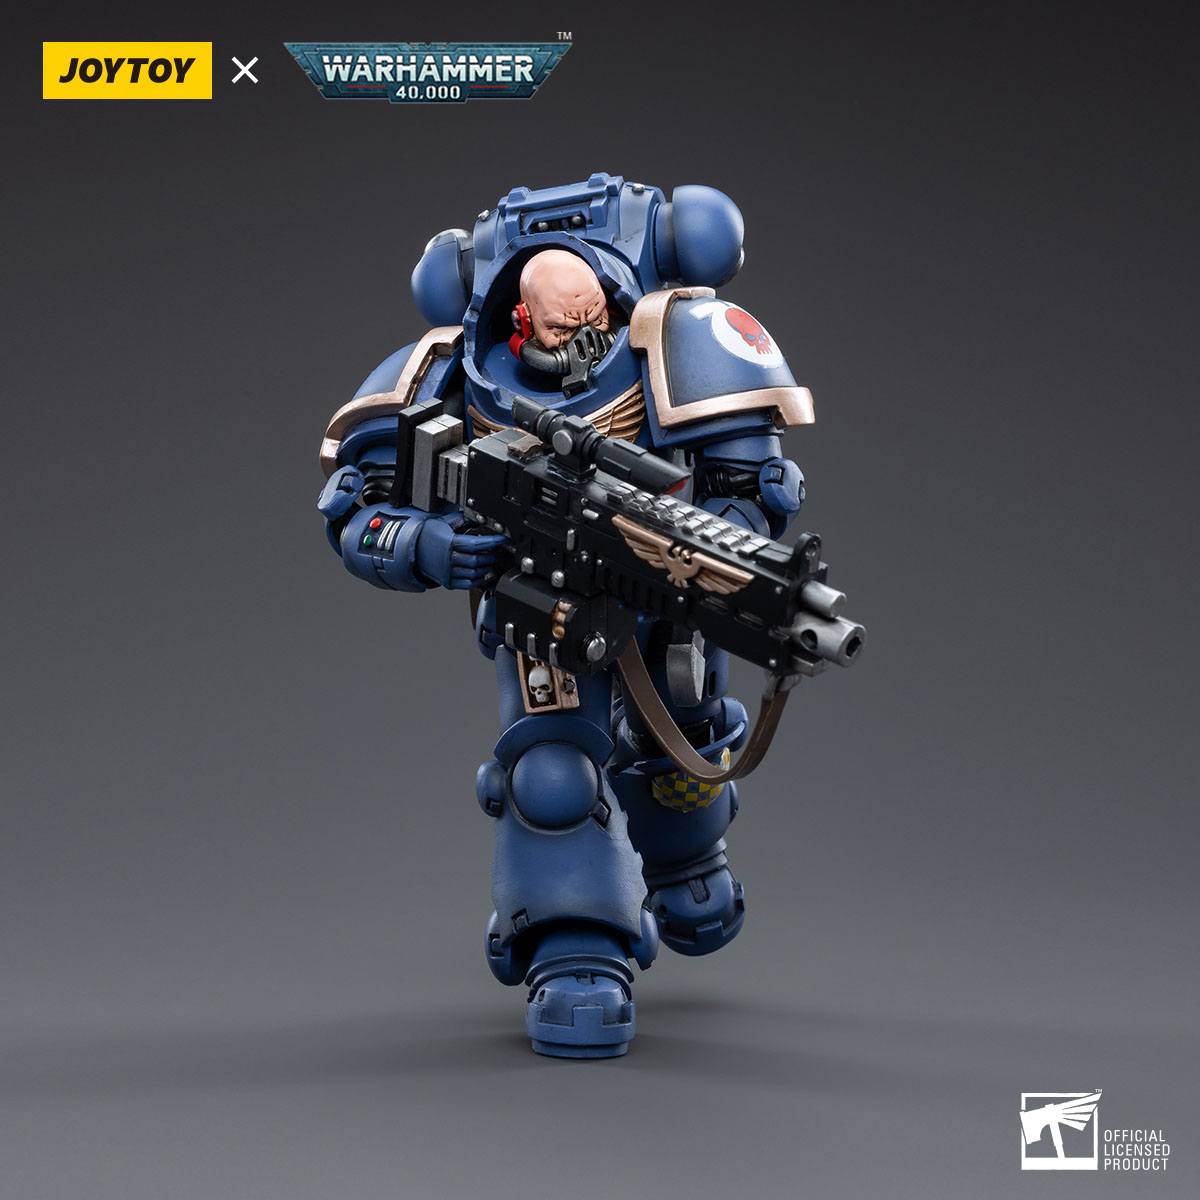 Warhammer 40k: Ultramarines Heavy Intercessor Sergeant Aetus Gardane - 12 cm-Actionfiguren-JoyToy-Mighty Underground